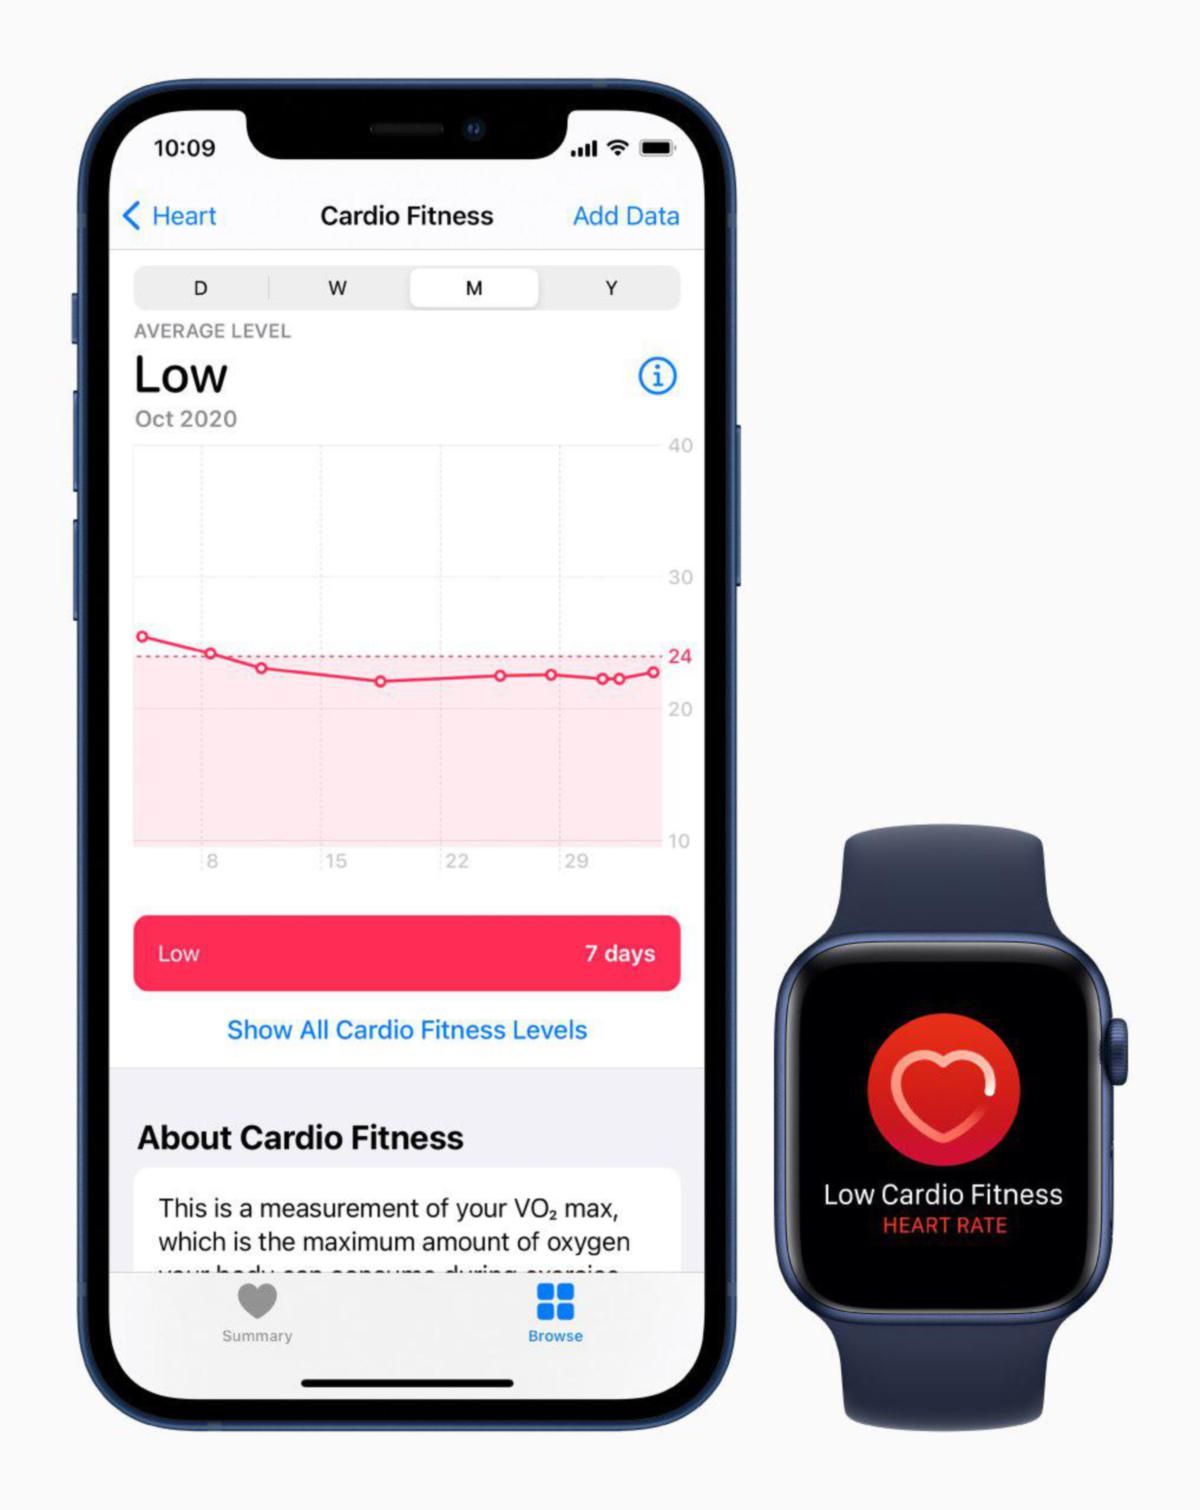 JAM pintar keluaran Apple iaitu Apple Watch Series 6 menjadi pilihan pengguna kerana memiliki kefungsian menyeluruh bermula daripada pembantu pintar sehingga kepada jurulatih kecergasan pintar.